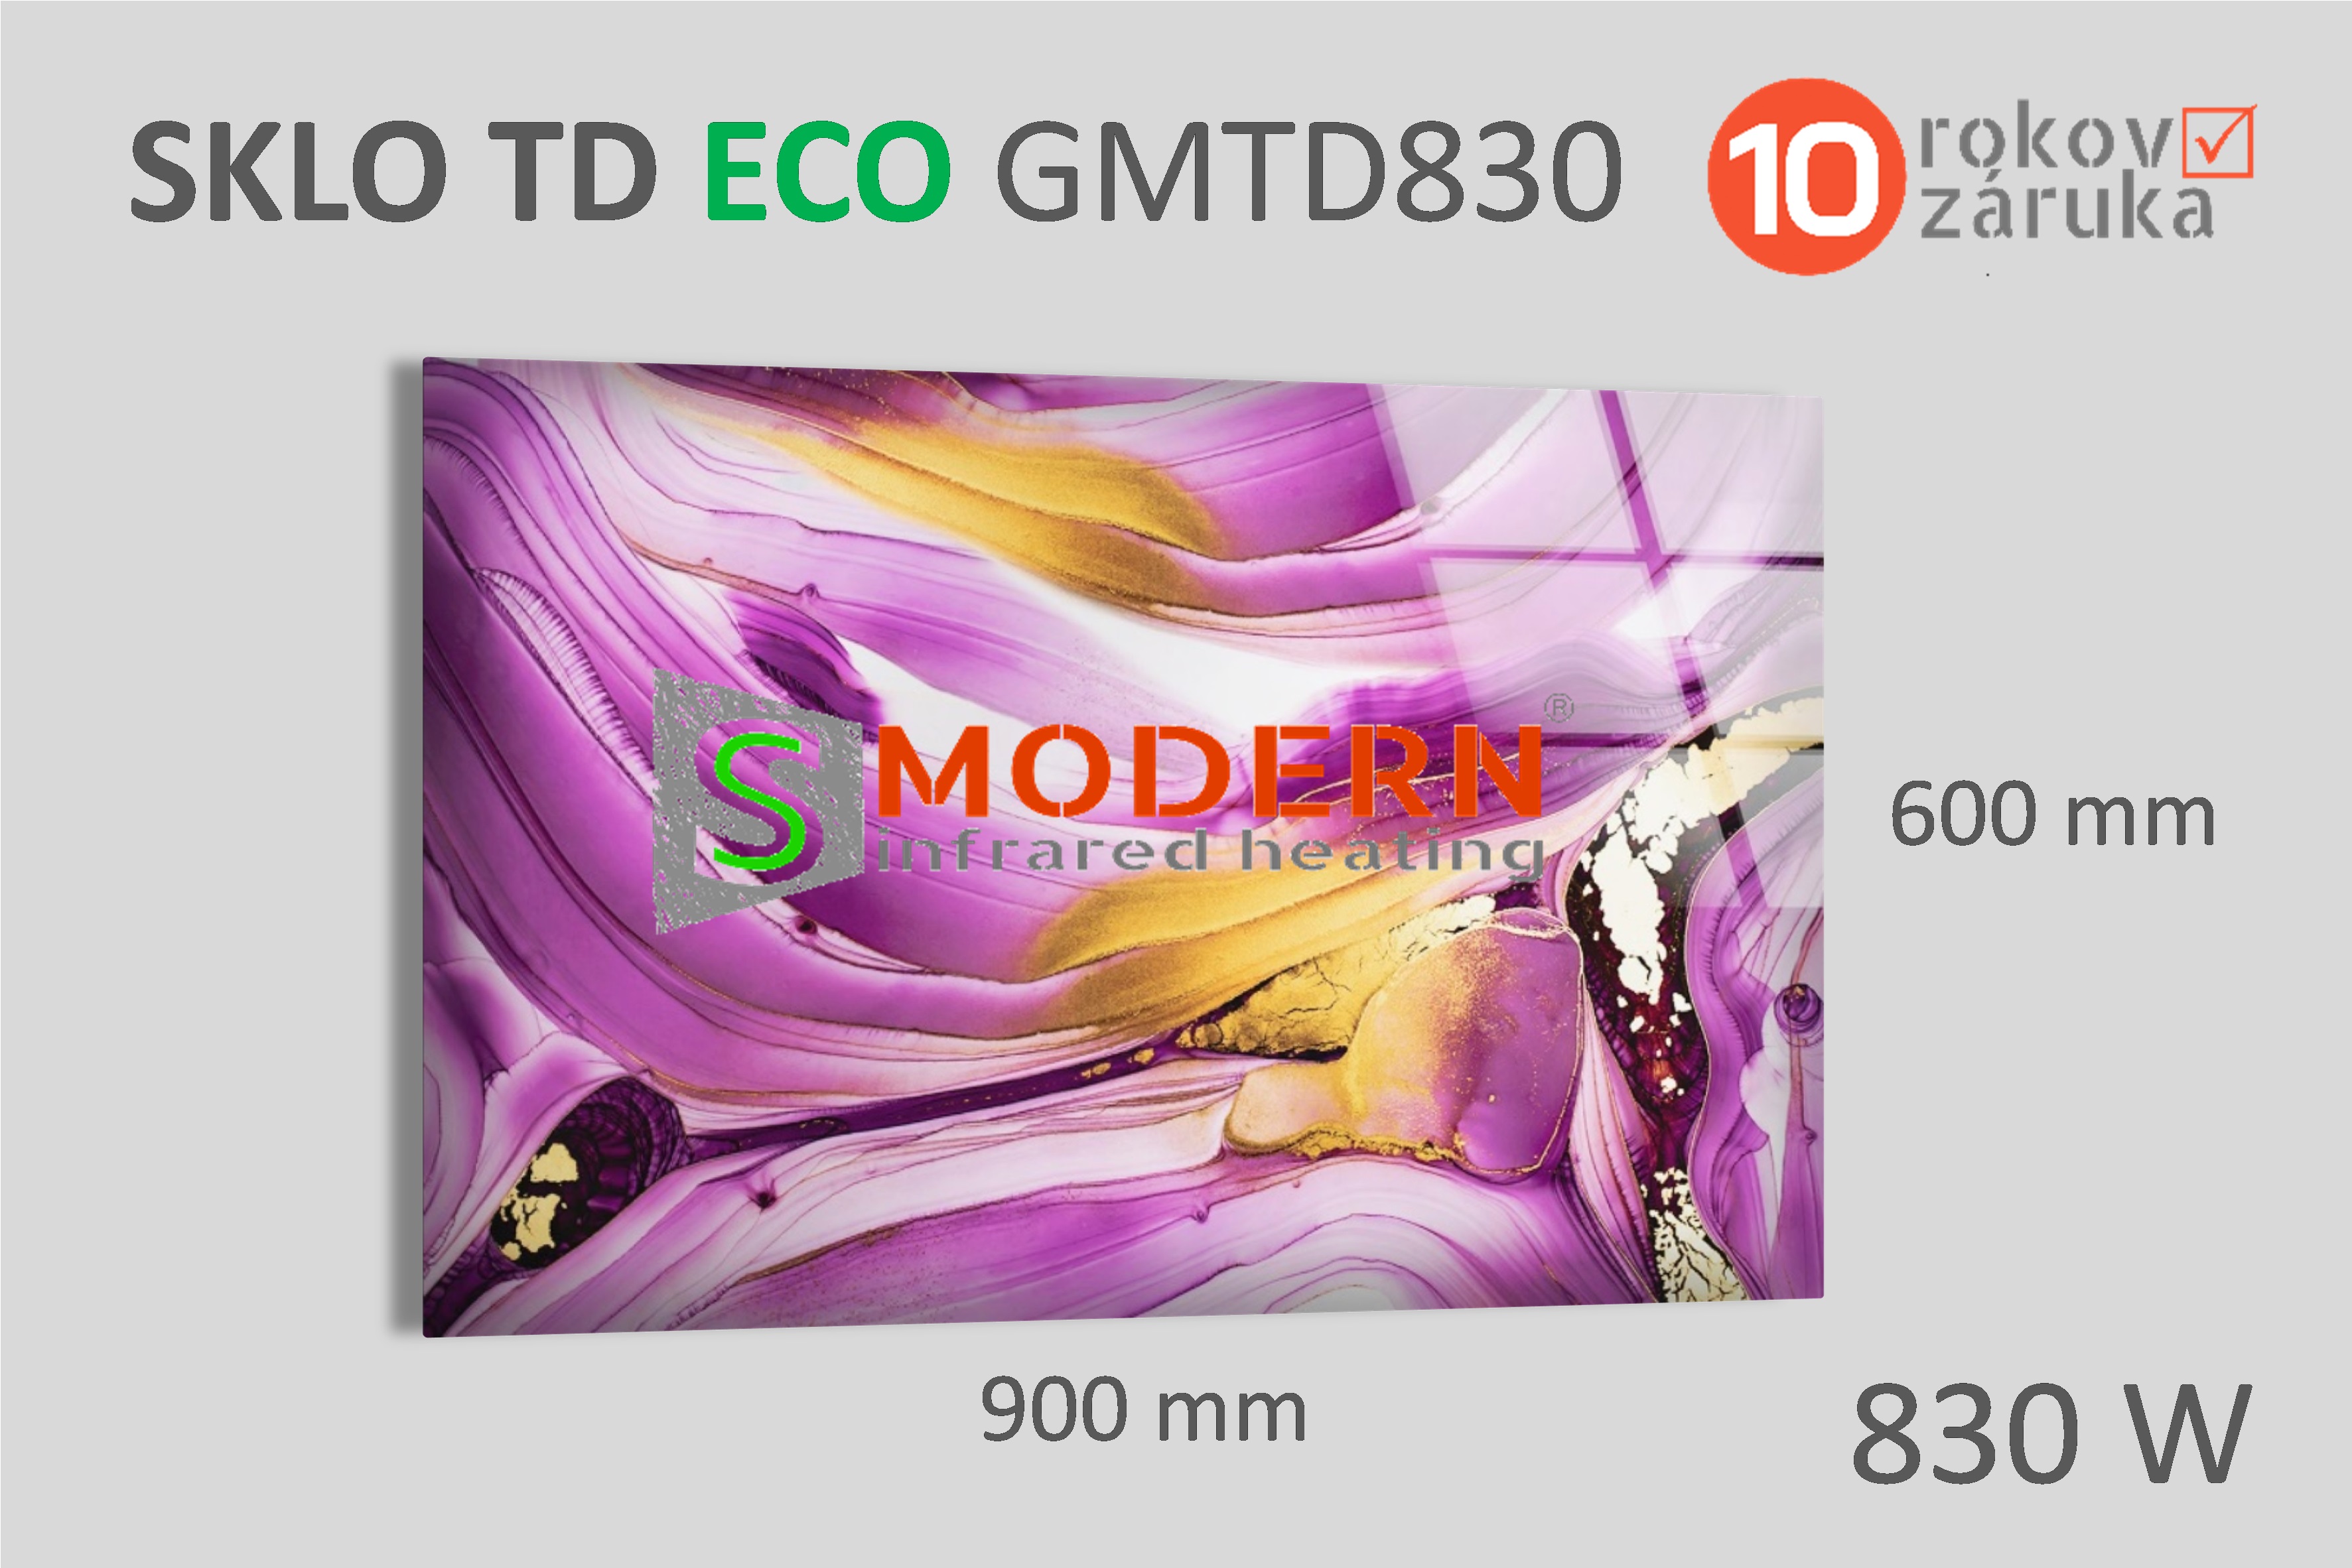 Skleněný infrapanel SMODERN® TD ECO GMTD830 / 830 W, obrazový